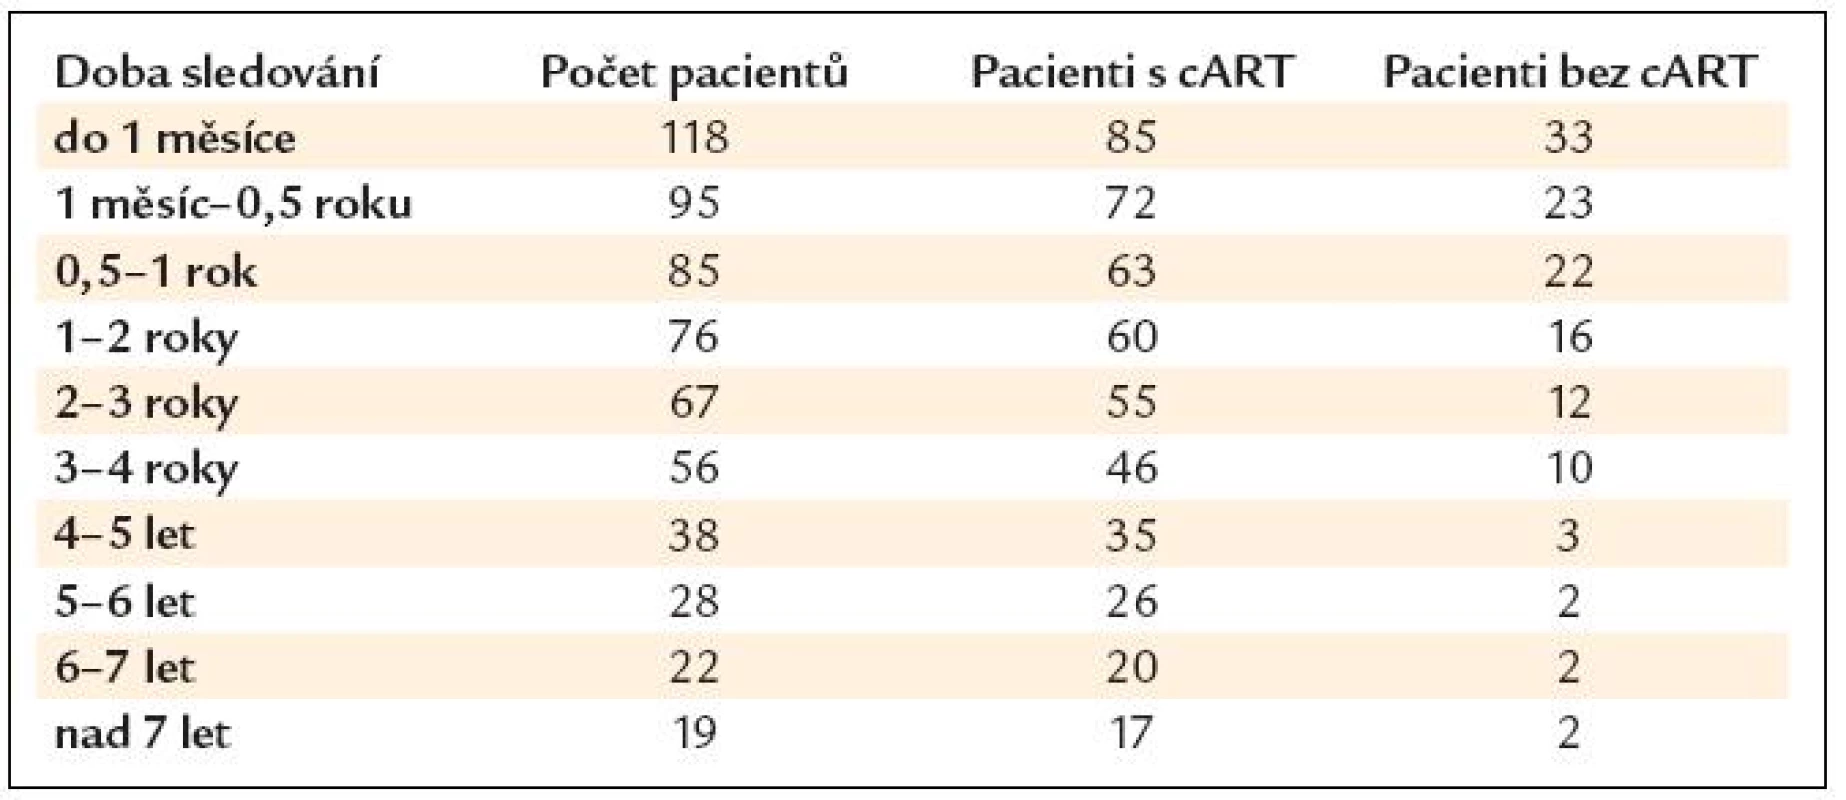 Počet pacientů v kategoriích doby sledování.